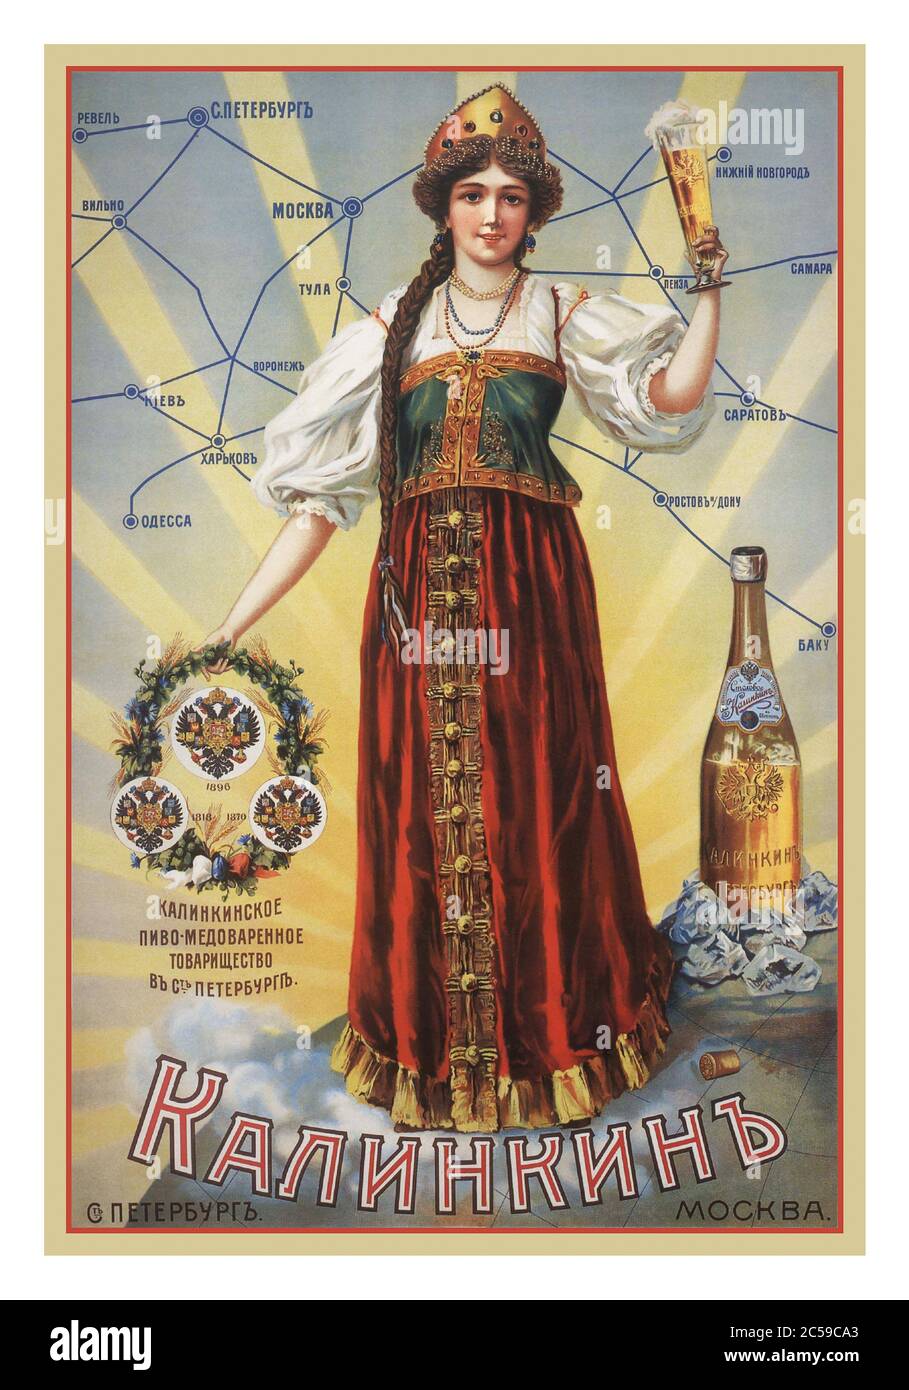 AFFICHE DE BIÈRE RUSSIE PUBLICITÉ ANCIENNE ANCIENNE ANCIENNE ANCIENNE russe ancienne bière russe alcool boisson affiche publicitaire mettant en vedette femme dans le costume traditionnel russe tenue d'un verre de bière Moscou Russie (1900) Banque D'Images